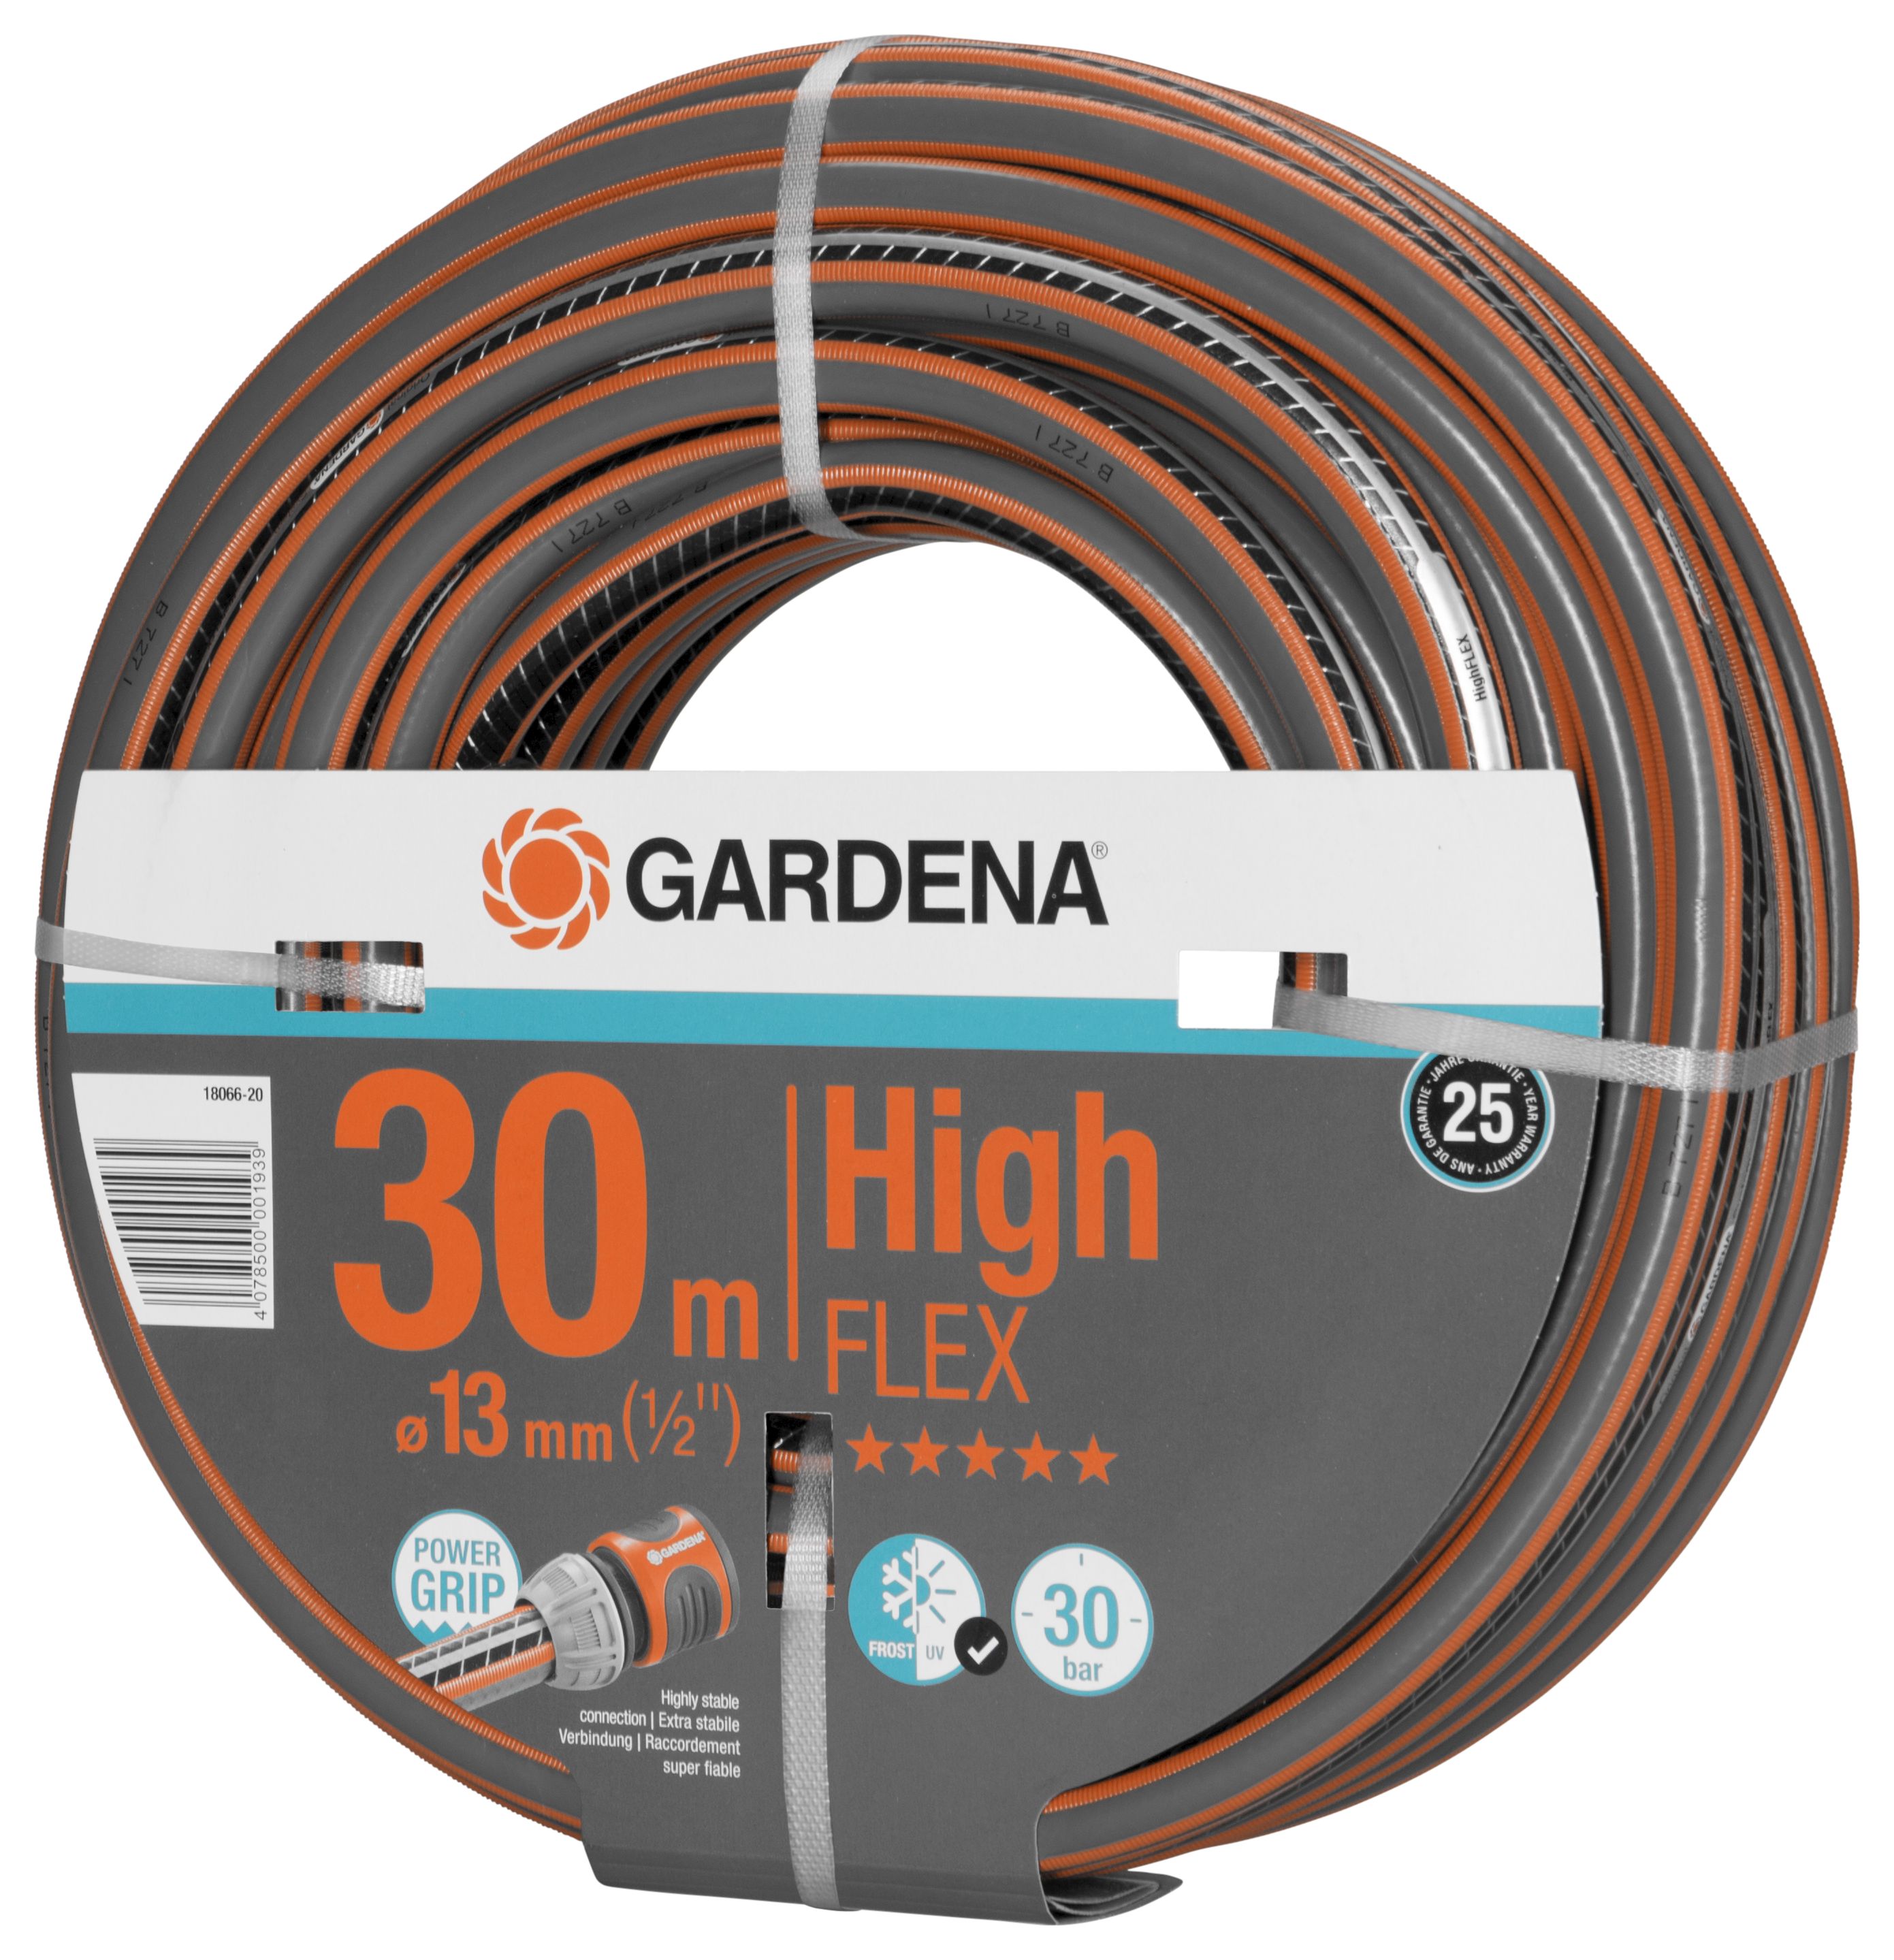 GARDENA Comfort HighFLEX Schlauch 13 mm (1/2"), 30 m